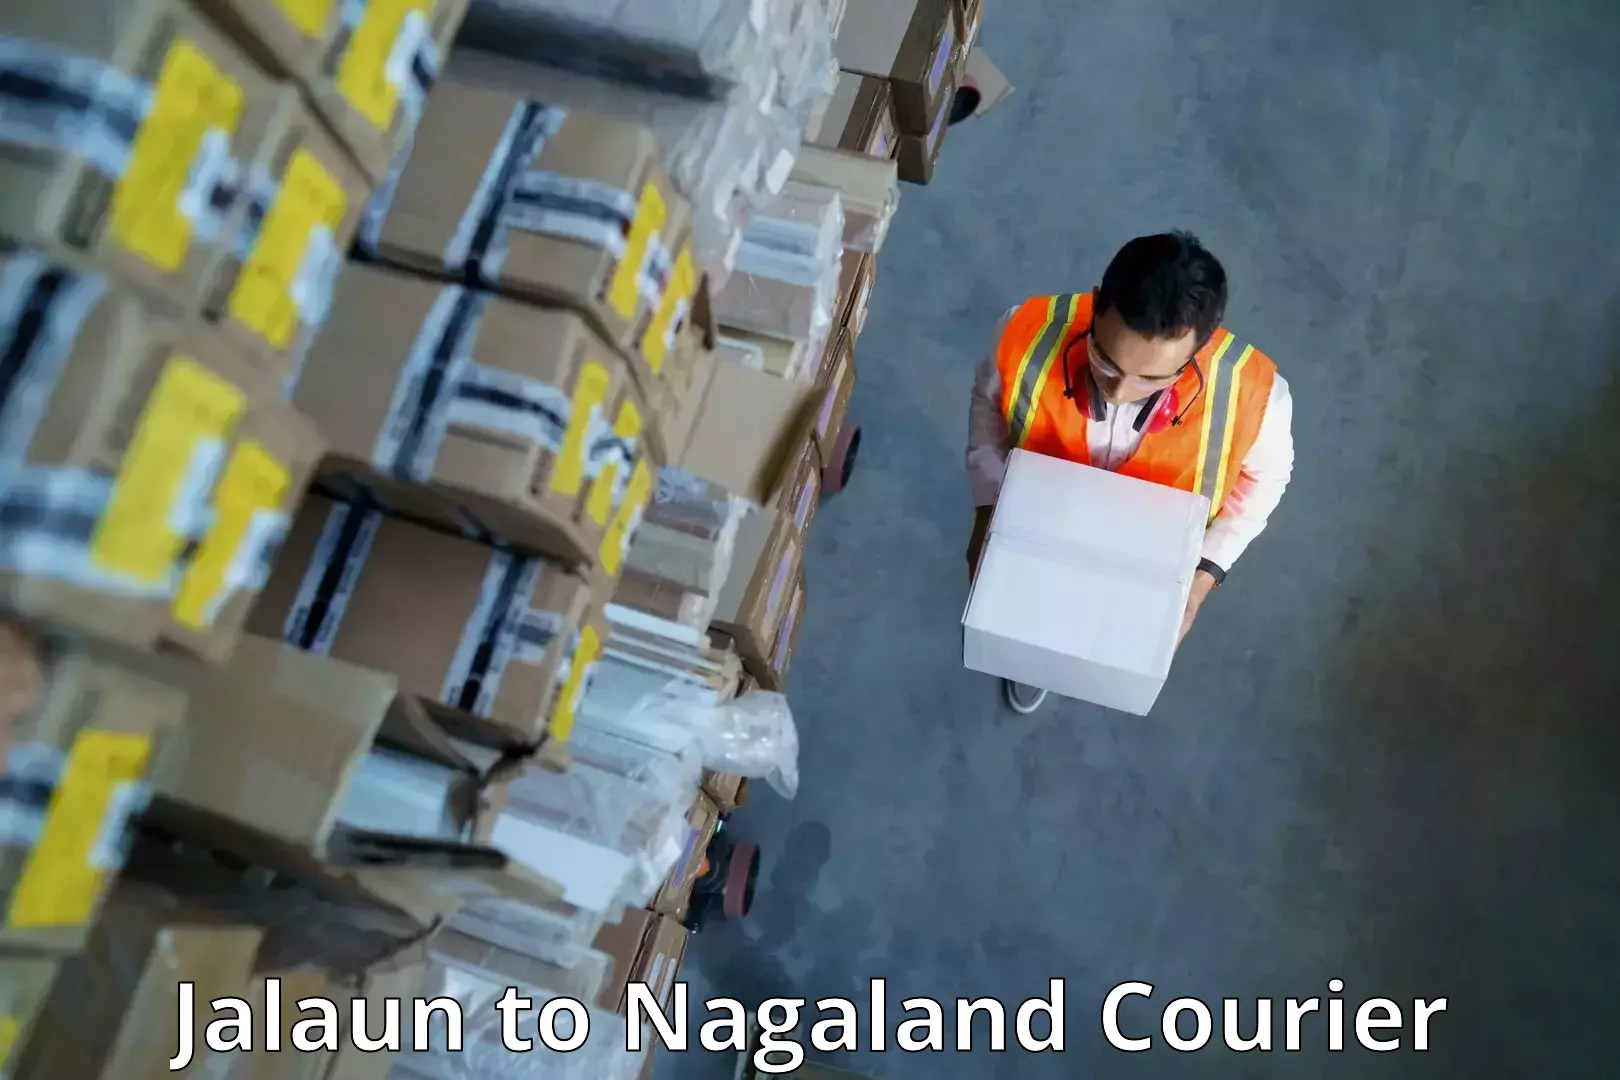 Courier service comparison Jalaun to Nagaland